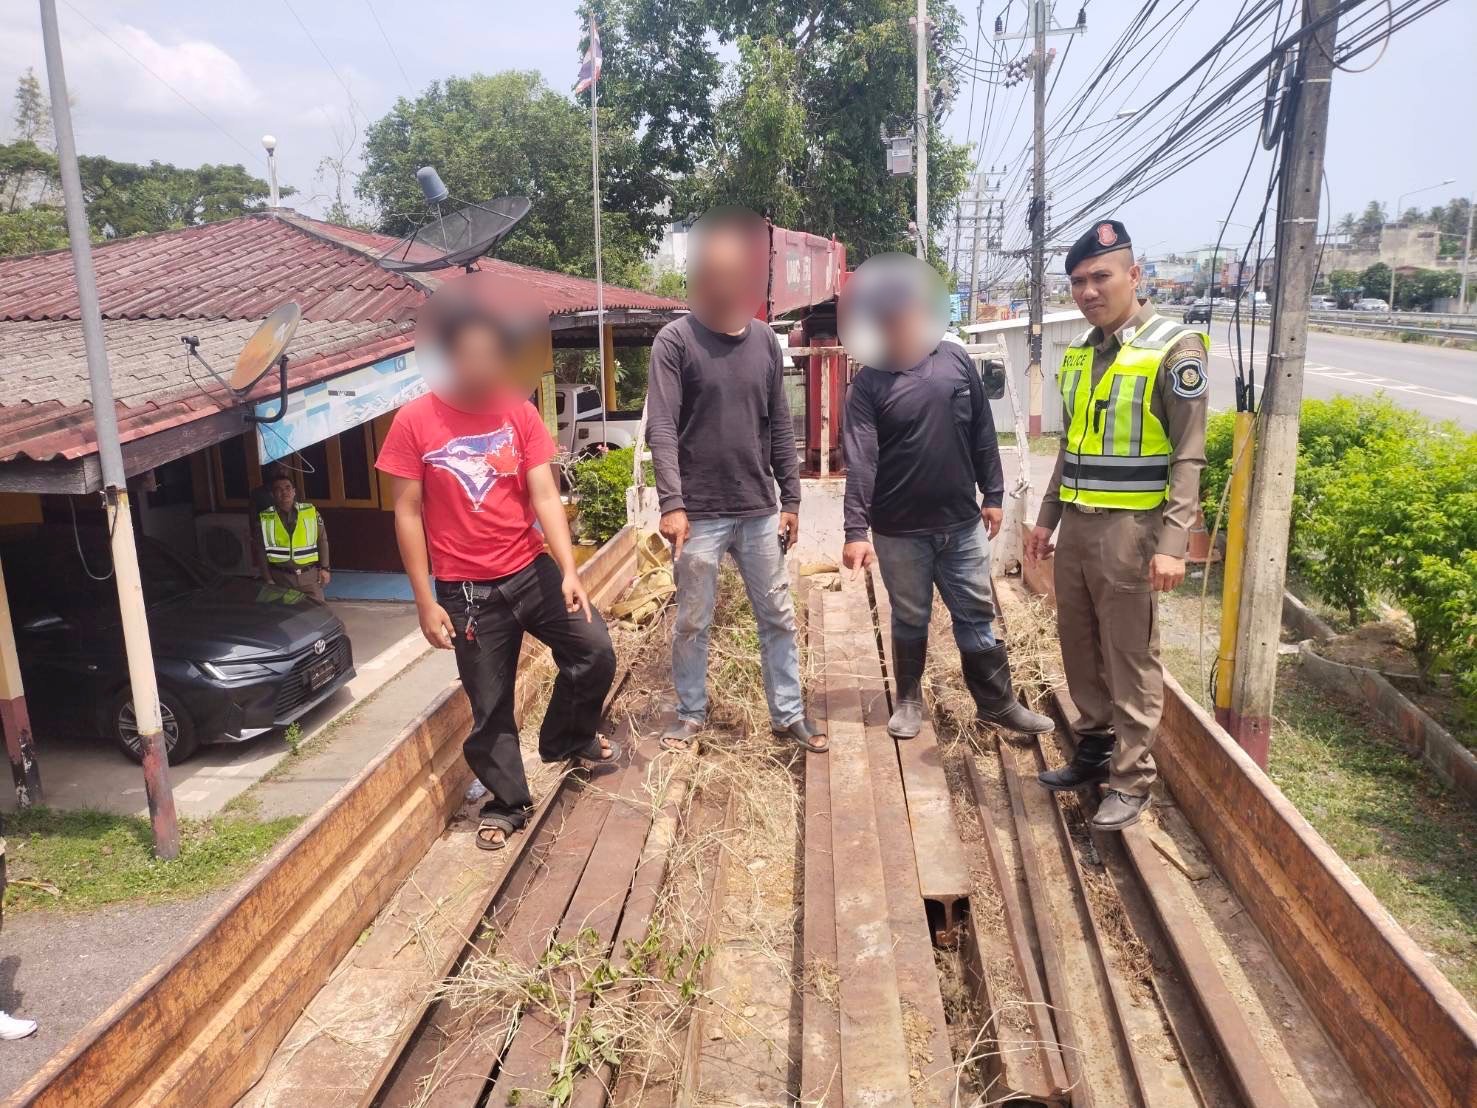 ตำรวจทางหลวง จับขบวนการลักขโมยรางรถไฟ พบของกลางบนอื้อบนรถบรรทุก